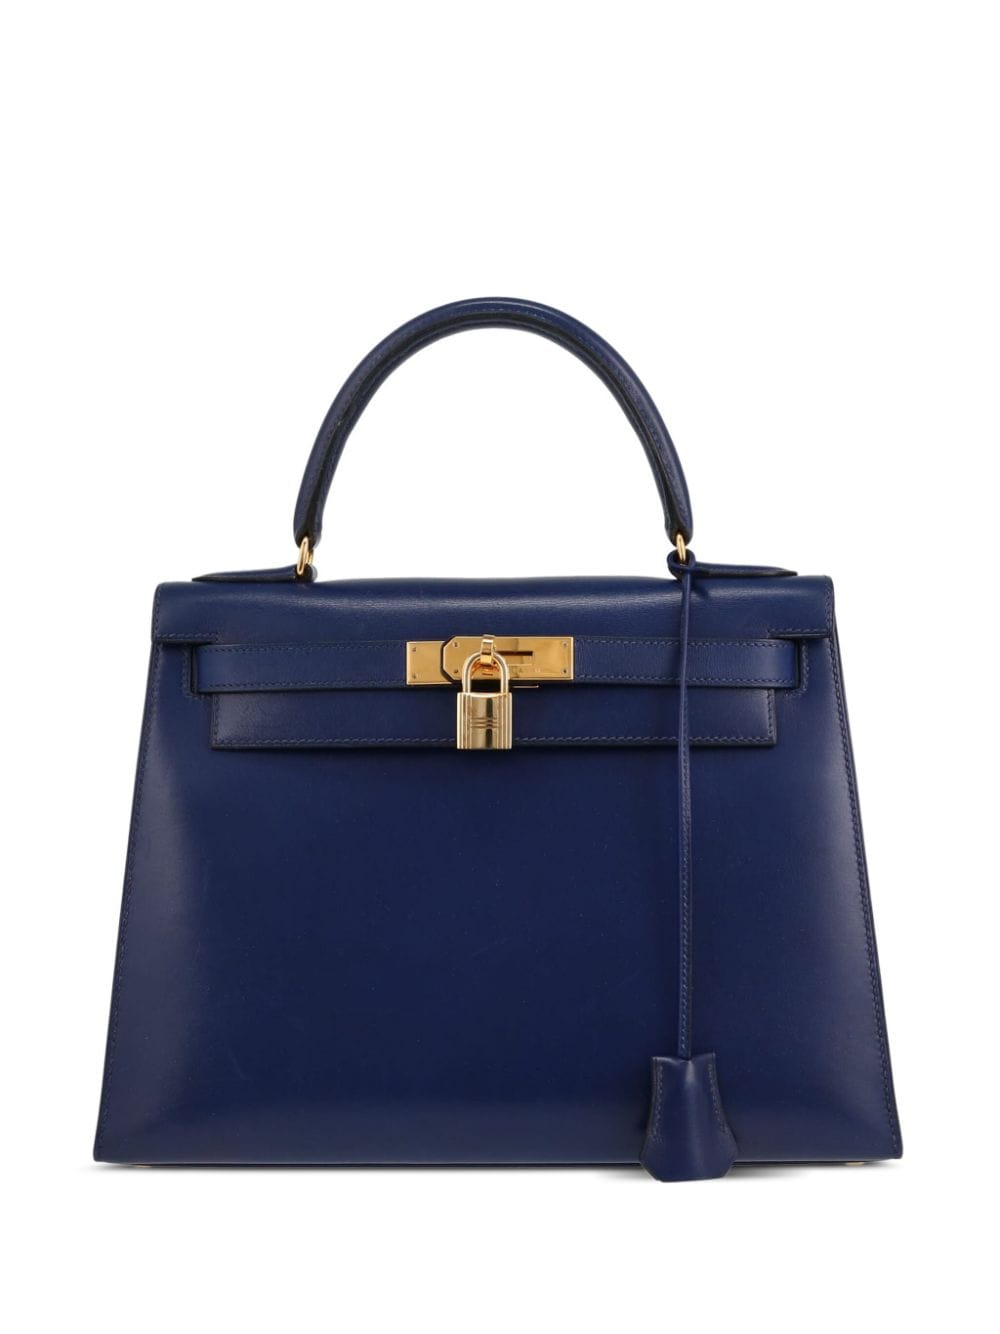 Hermès Pre-Owned 1993 Kelly 28 two-way handbag - Blue von Hermès Pre-Owned